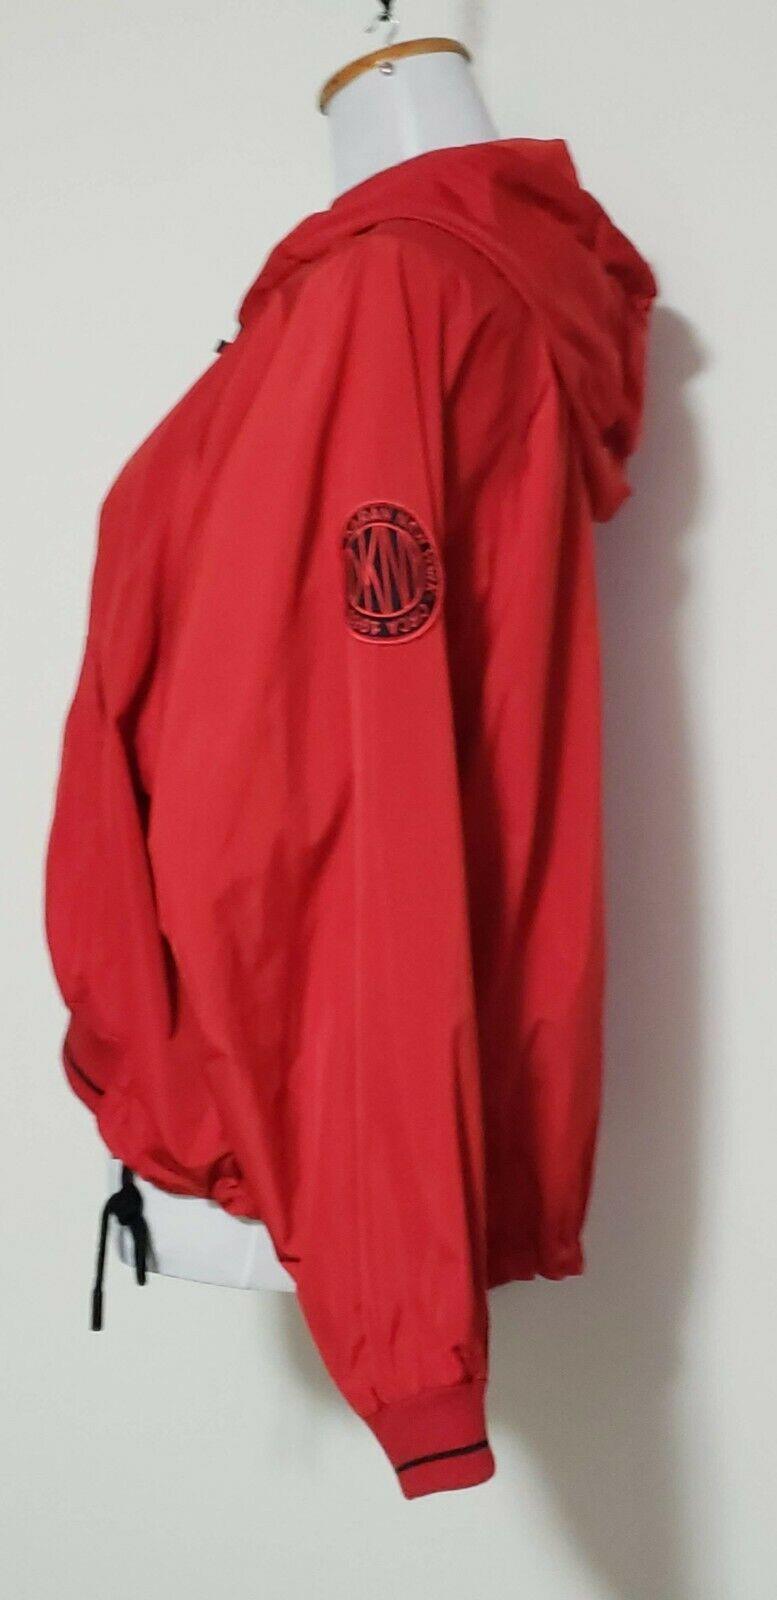 DKNY Women's Cropped Windbreaker Jacket Hooded Camo Lined Red Size S - SVNYFancy